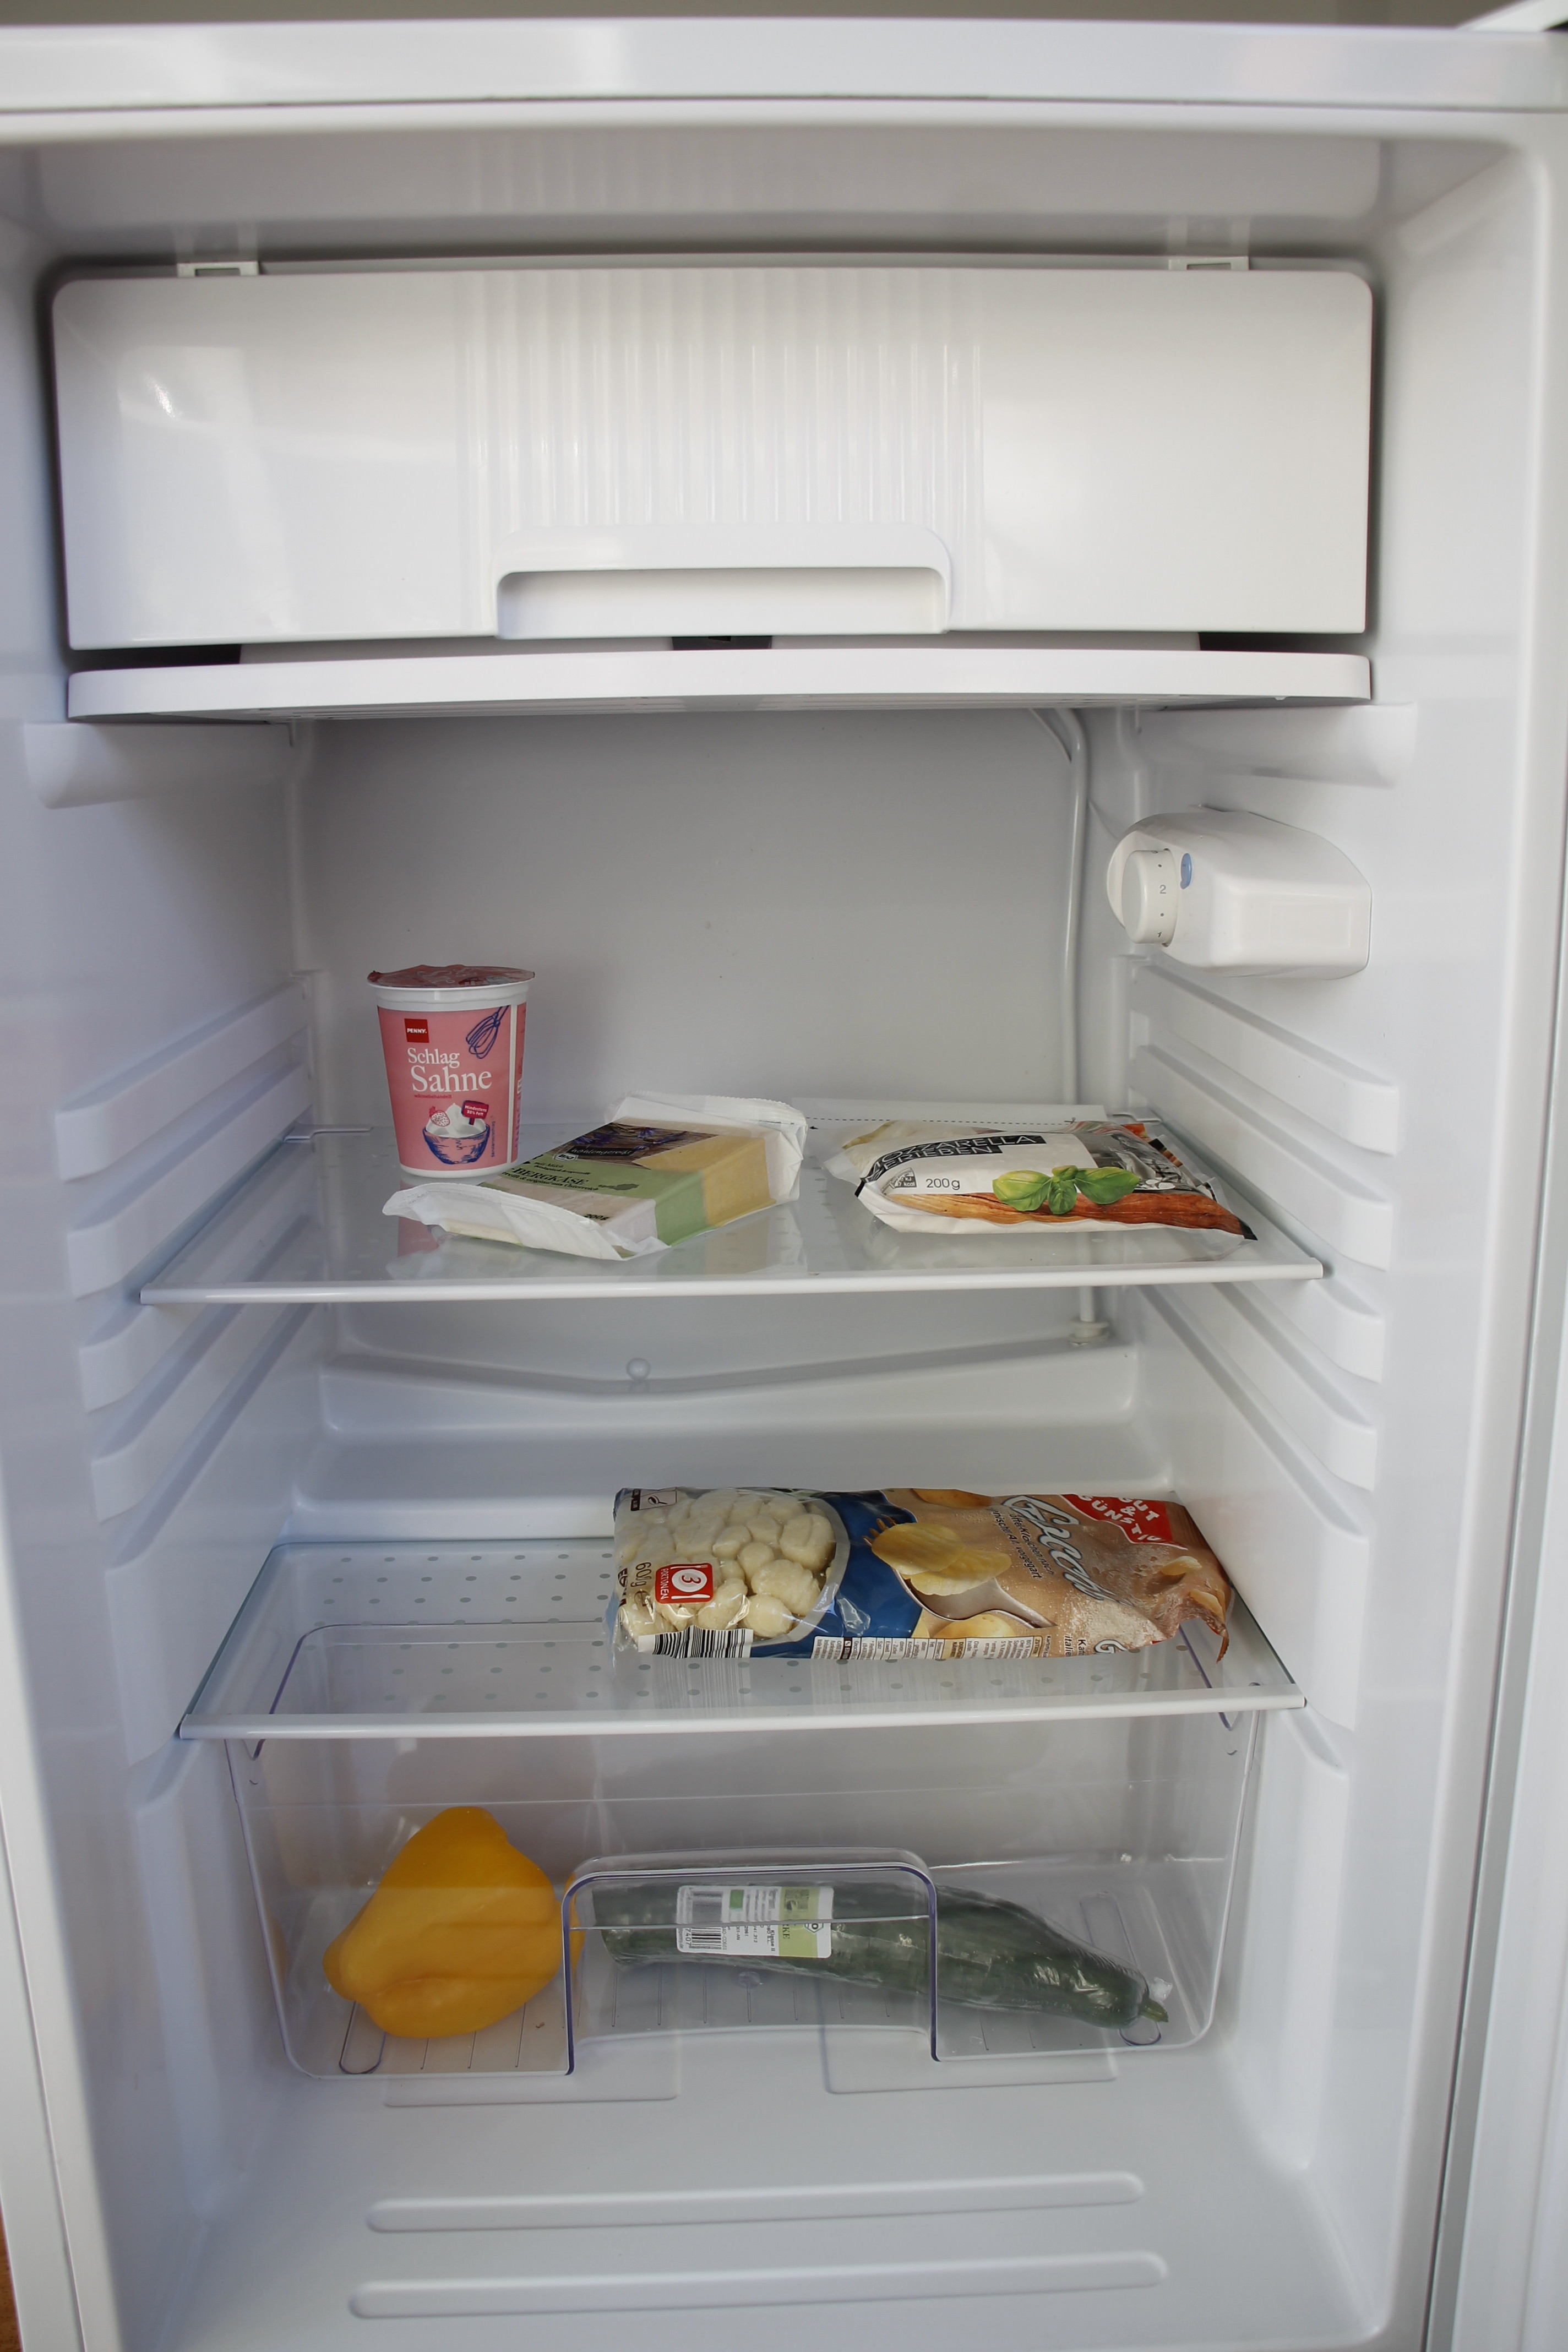 Die Festtage sind gesichert: Ein Klarstein Kühlschrank im Test